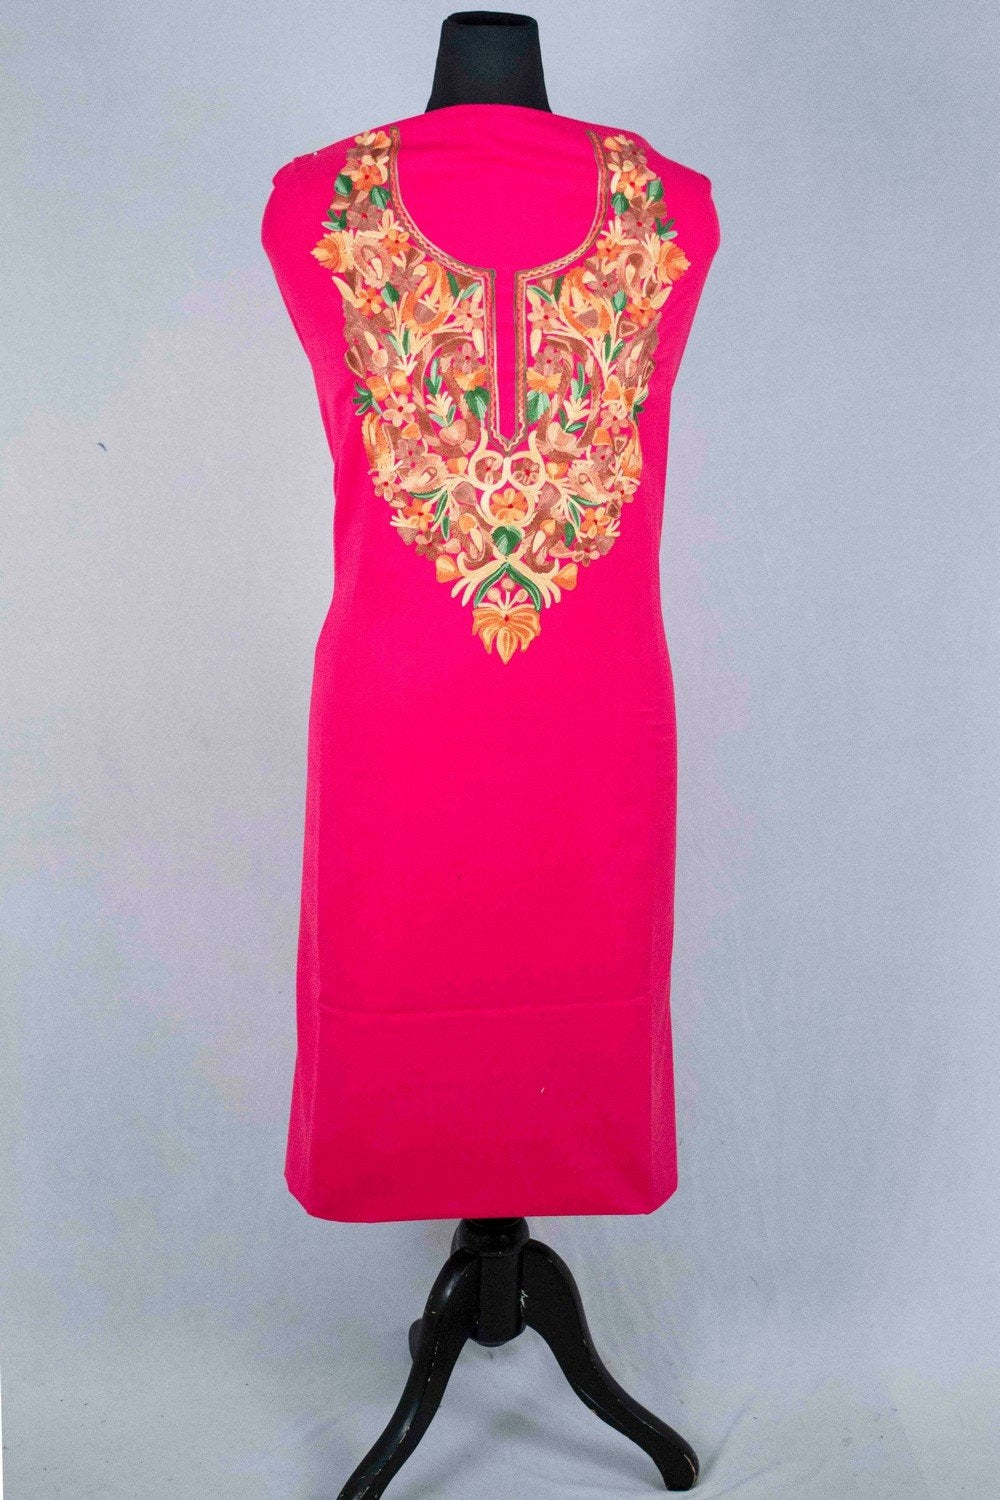 Pink Colour Aari Work Salwar Kameez With Blooming Multi